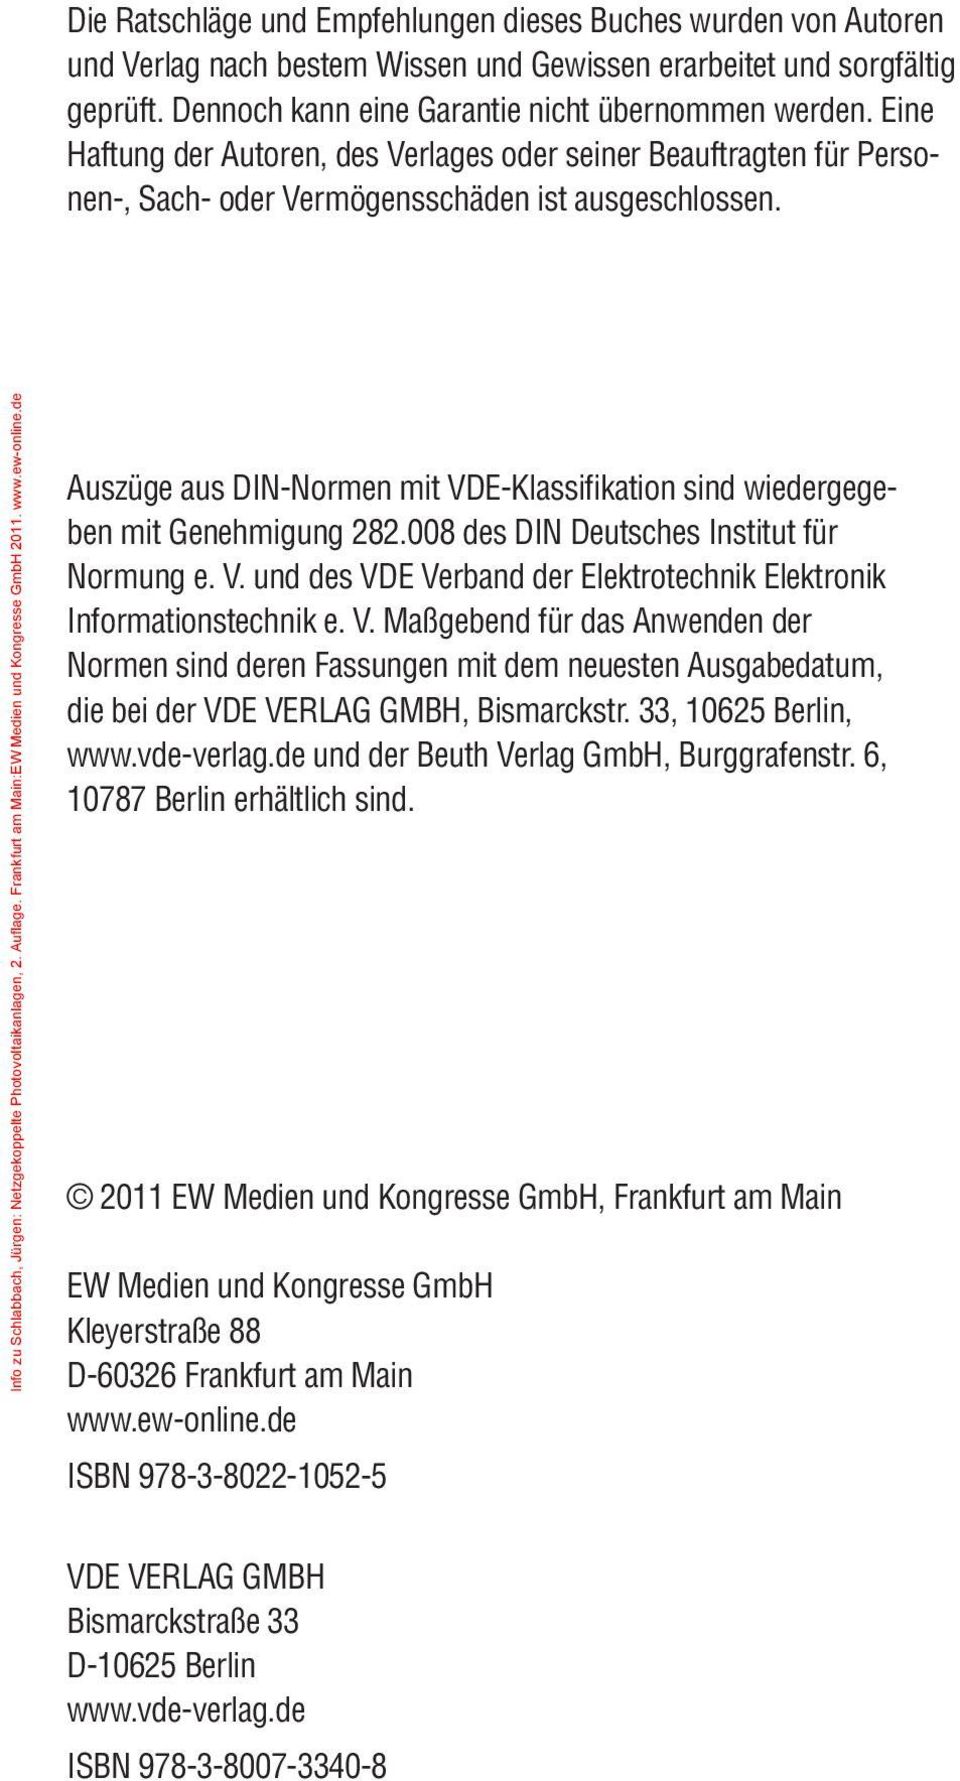 Auflage. Frankfurt am Main:EW Medien und Kongresse GmbH 2011. www.ew-online.de Auszüge aus DIN-Normen mit VDE-Klassifikation sind wiedergegeben mit Genehmigung 282.